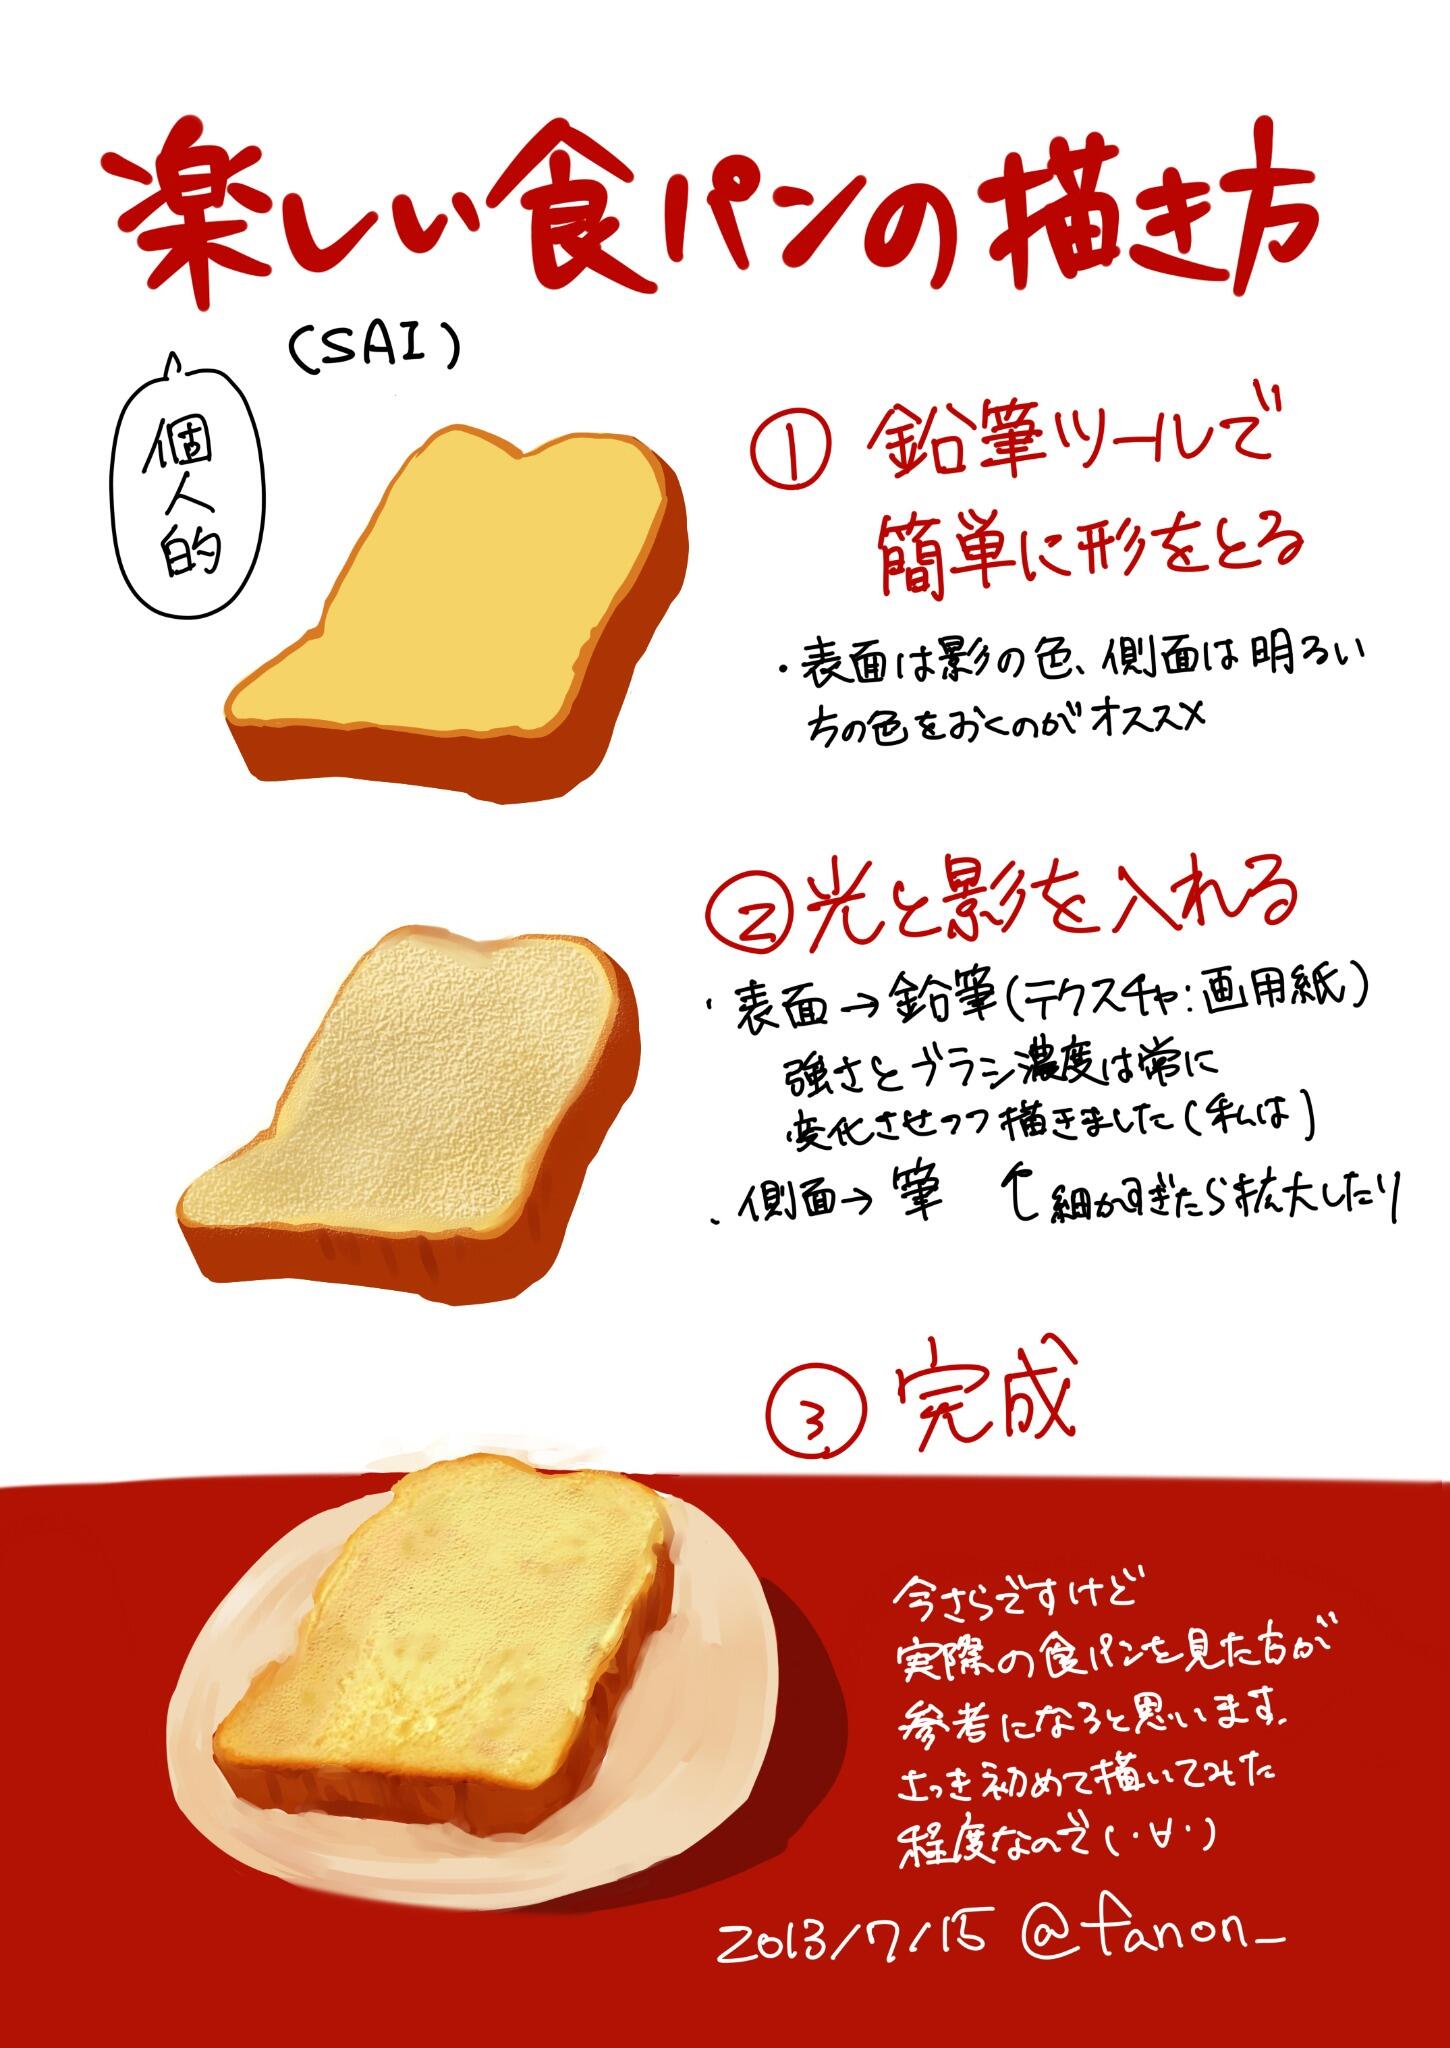 ファノン 楽しい食パンの描き方 Http T Co 3buc6lzqca Twitter